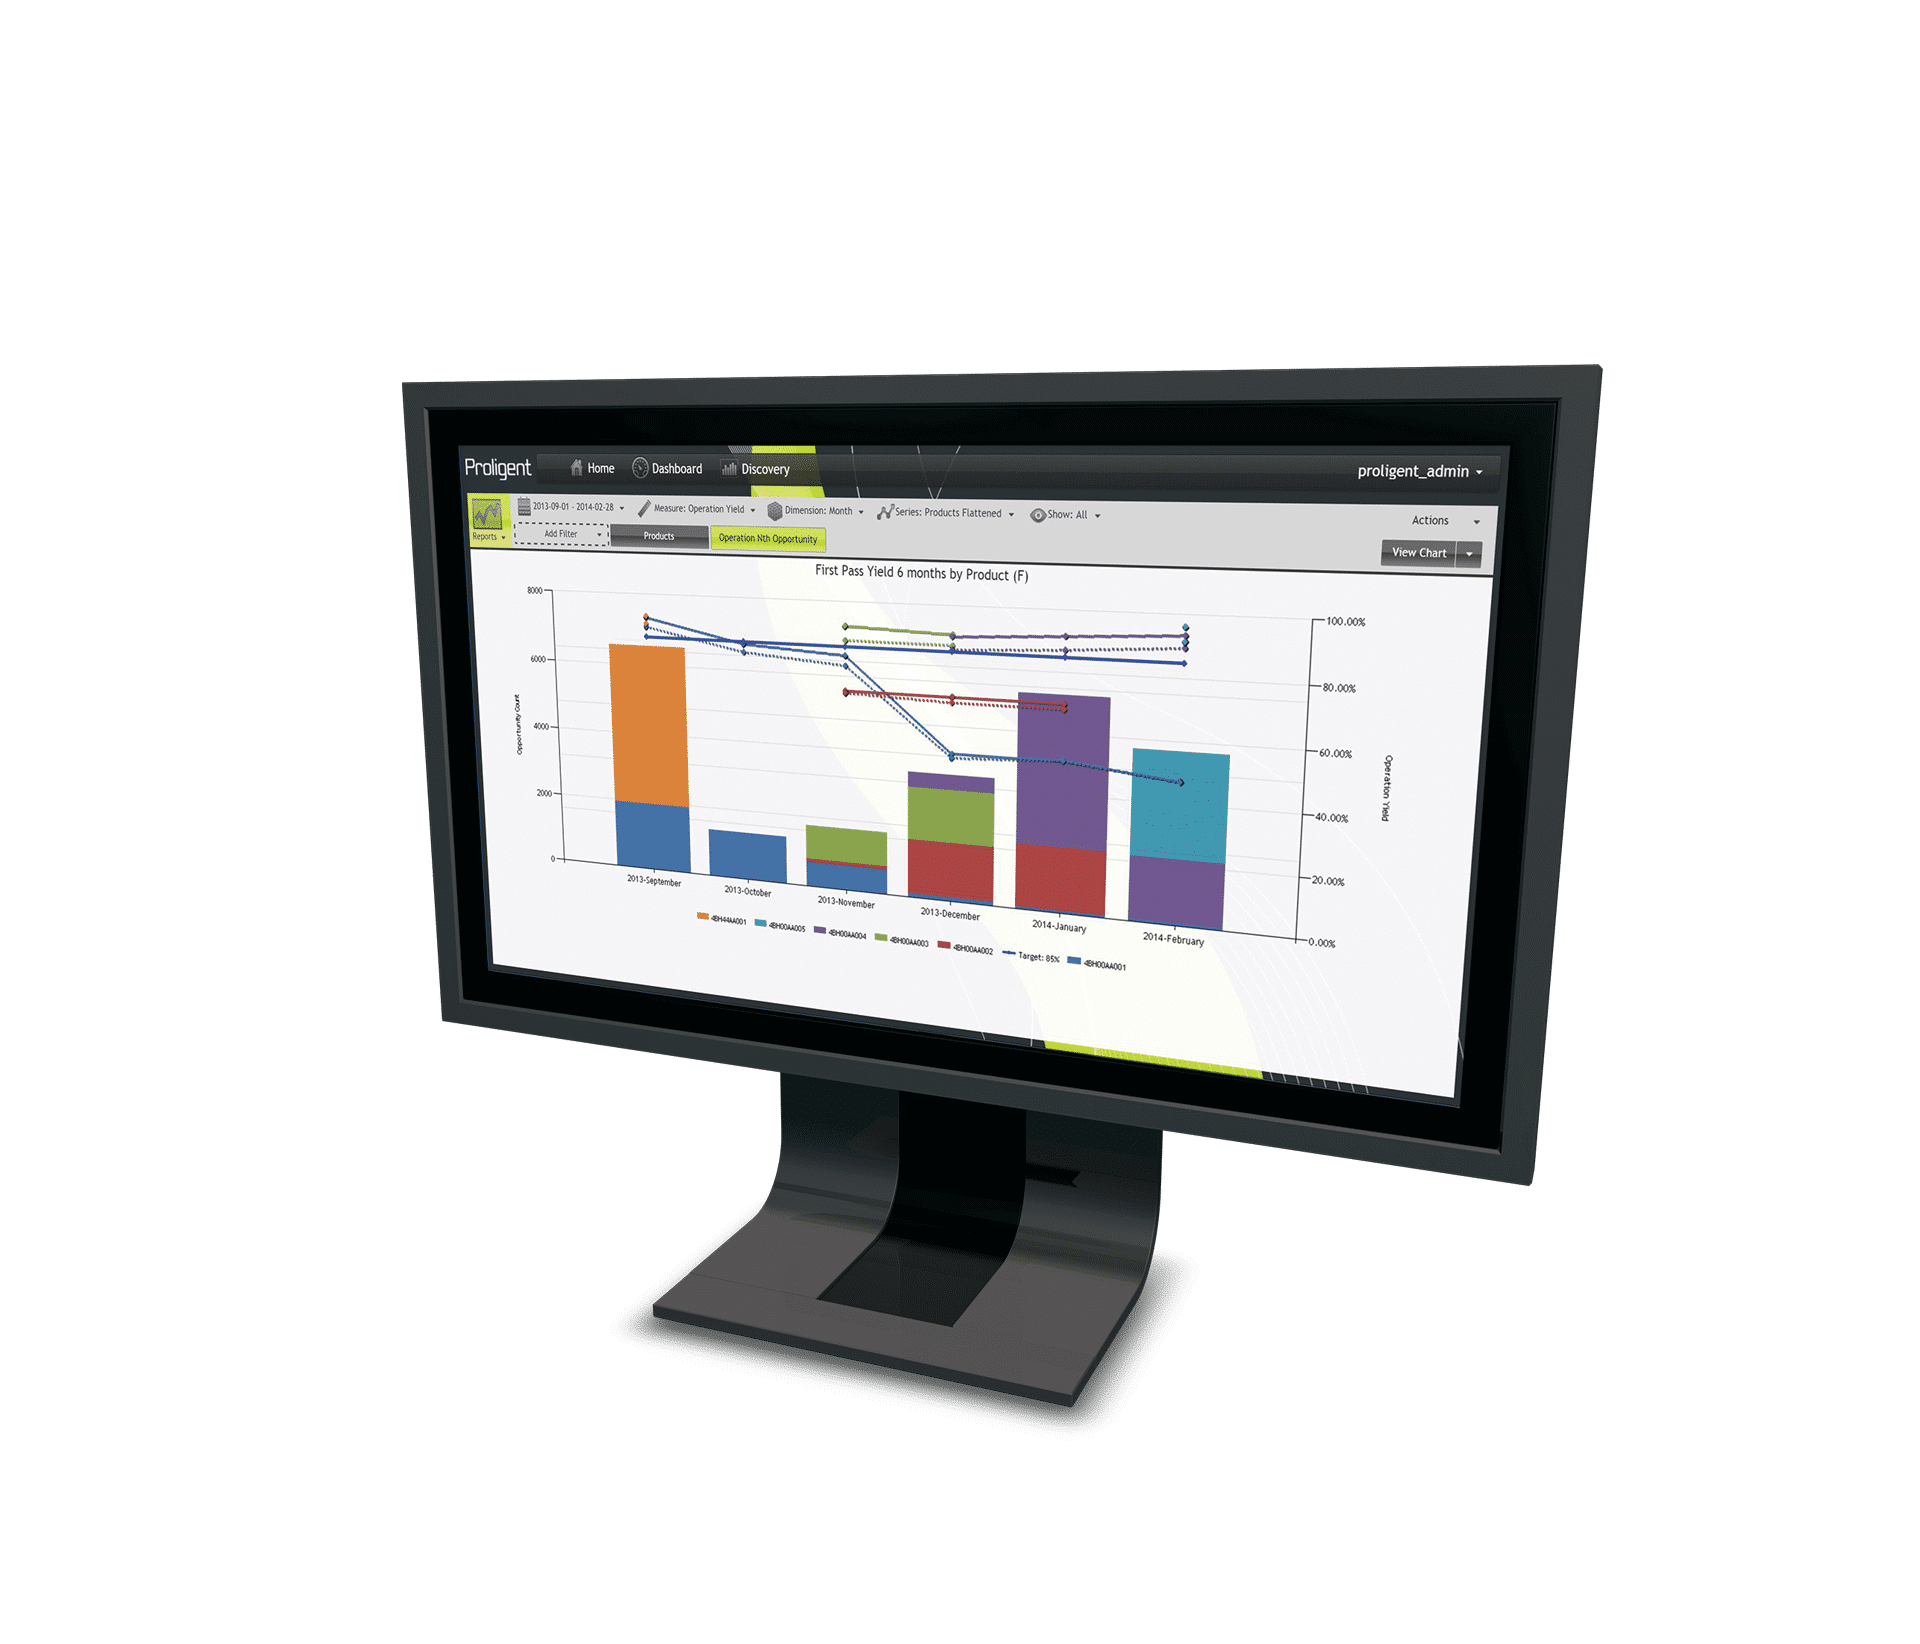 Monitor mit Proligent-Anzeige zur Produktentwicklung nach Version